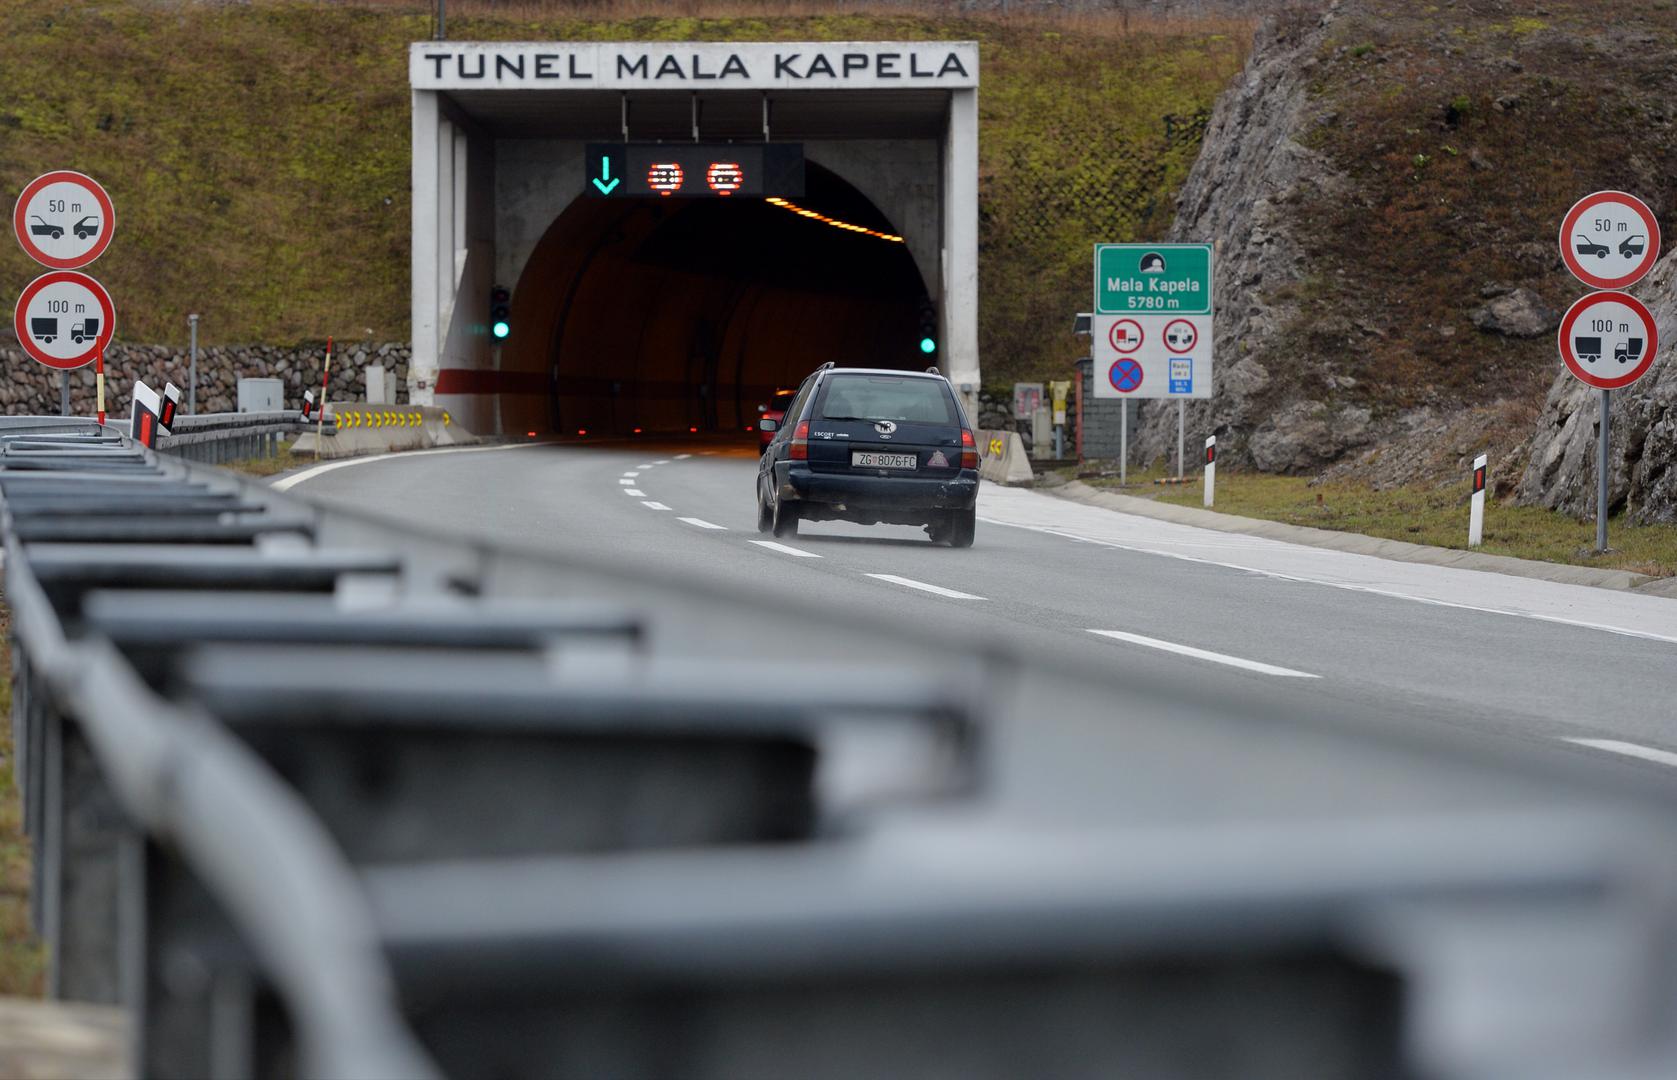 1. Tunel Mala Kapela, 5.821 metar: Tunel Mala Kapela najduži je cestovni tunel u Hrvatskoj i nalazi se na autocesti A1. Smješten je između sela Jezerane i Modruš te između izlaza za Ogulin i Brinje na autocesti A1. Prolazi kroz planinski lanac Mala Kapela, po kojoj je i dobio ime. Sadrži dvije cijevi različitih duljina i poznat je po svojim sigurnosnim i komunikacijskim sustavima, uključujući izlaze za slučaj opasnosti i distribuciju hrvatskog radio signala.